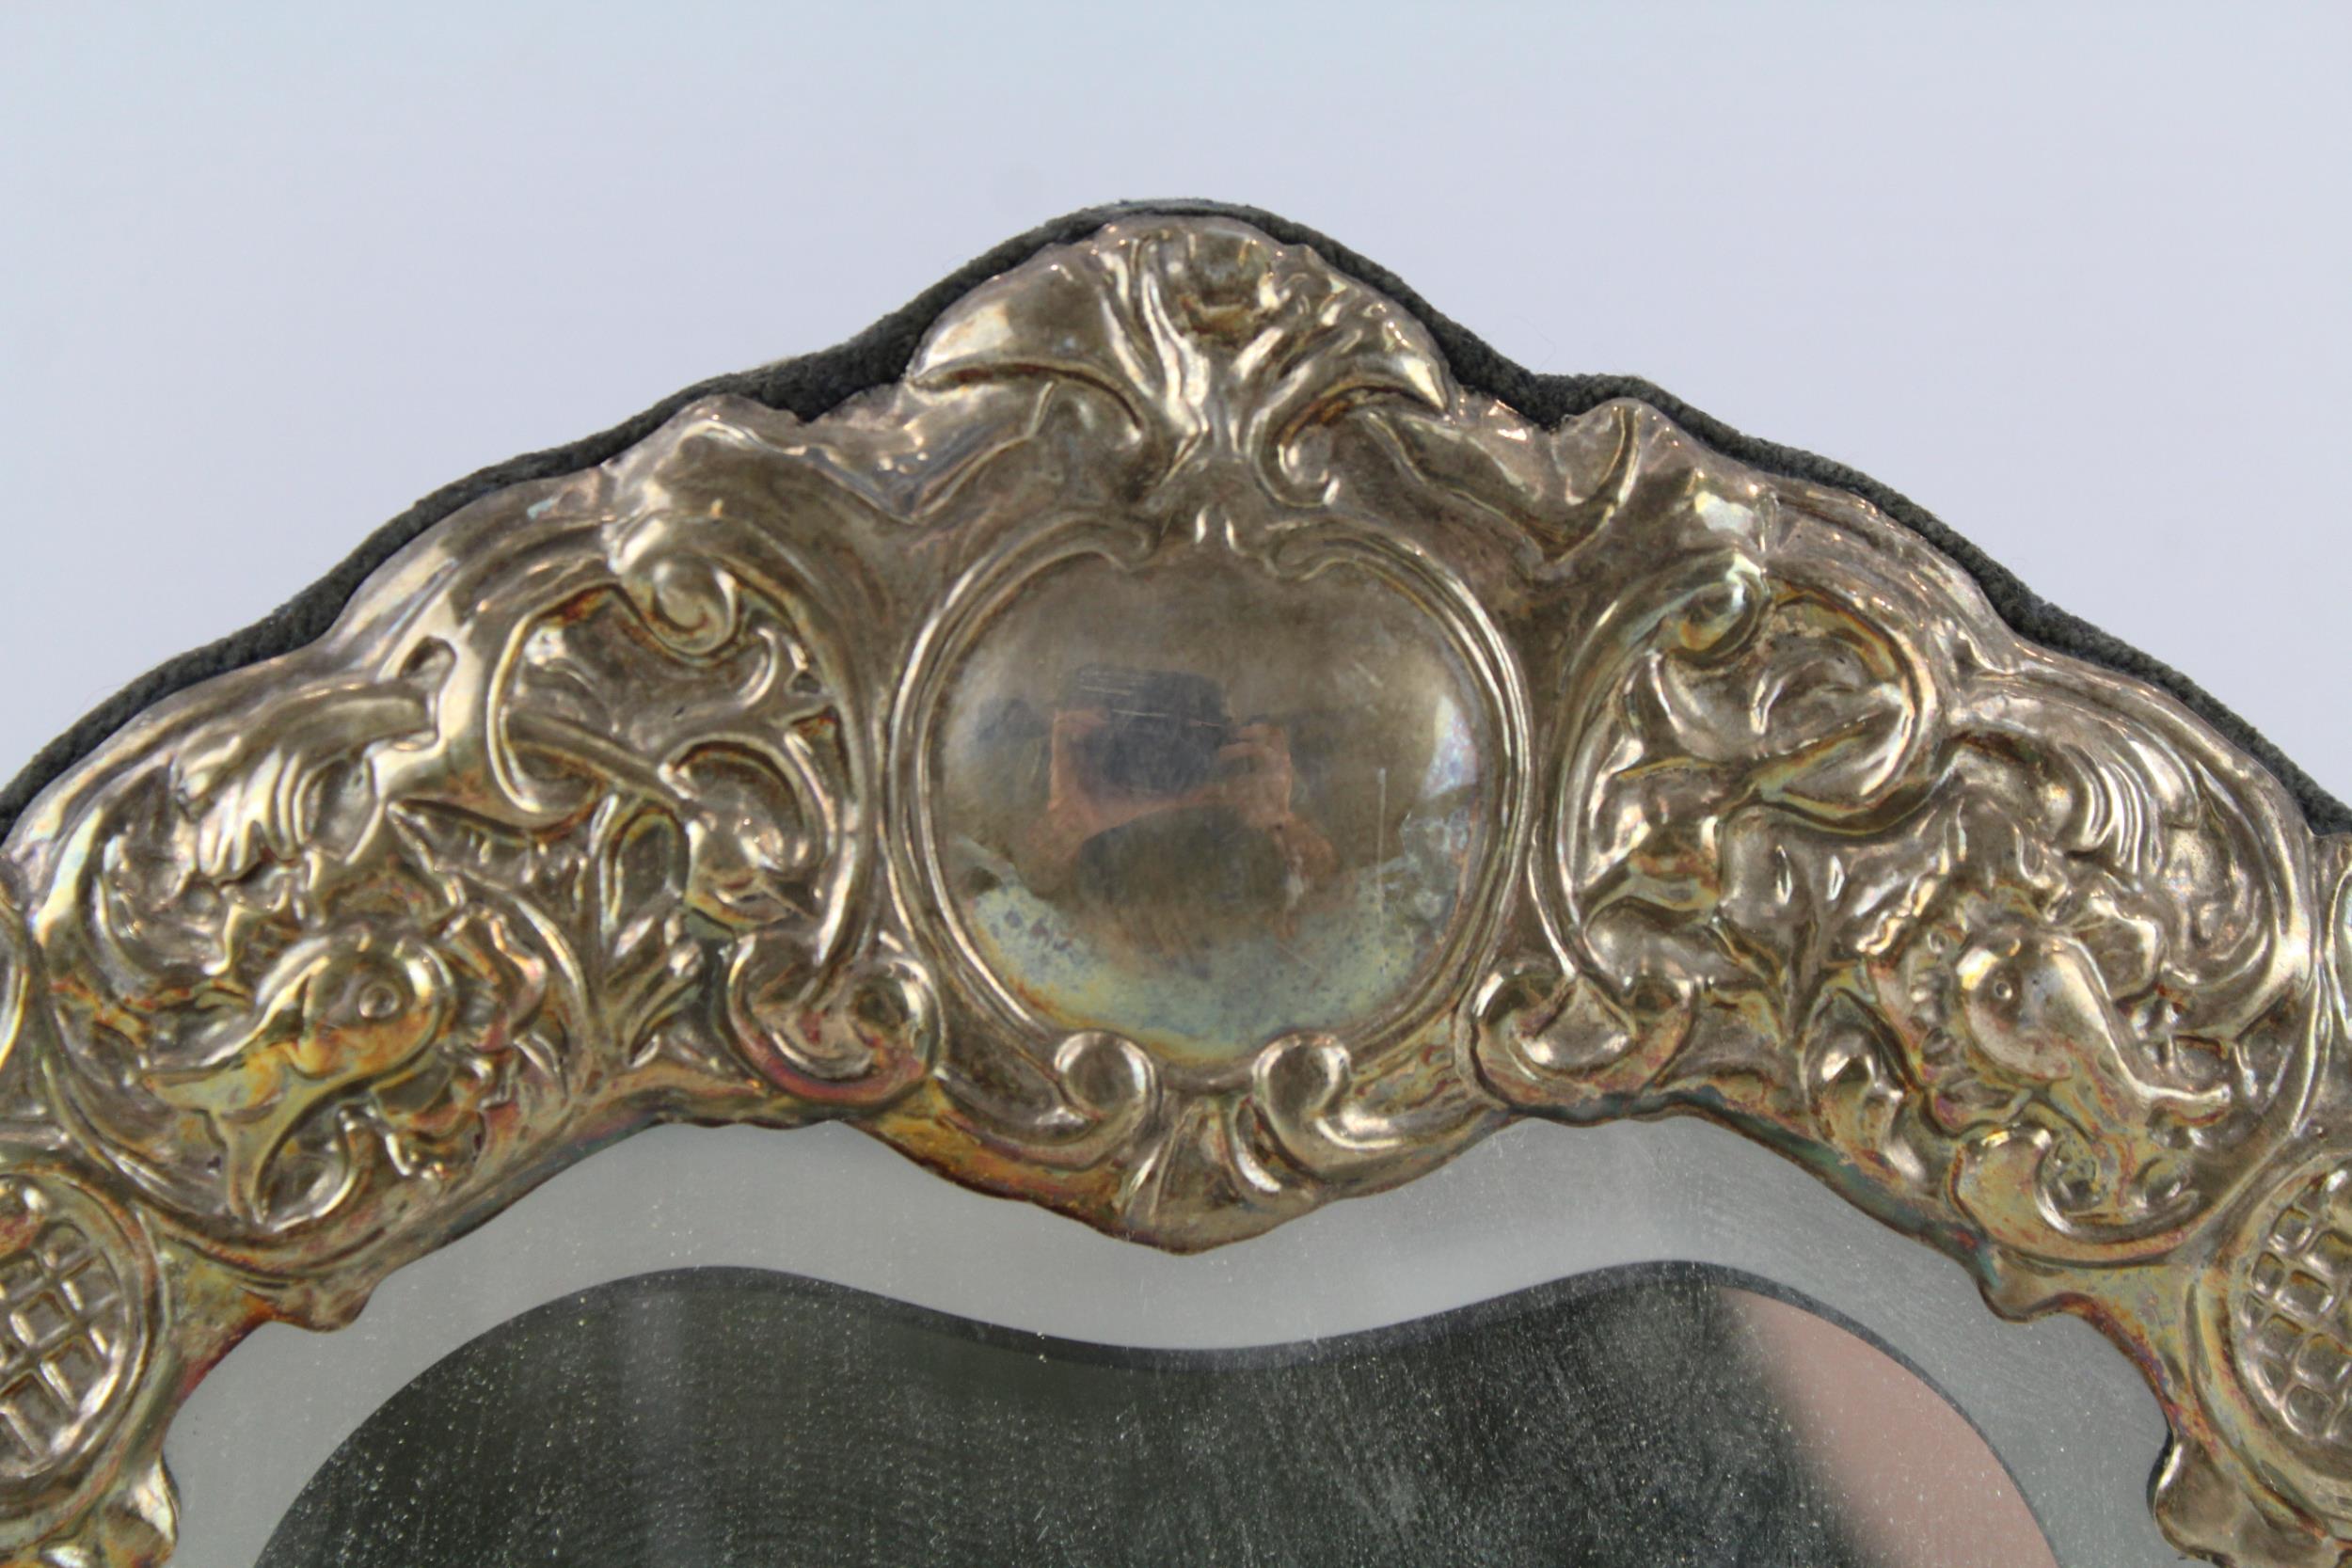 Vintage Hallmarked 1996 Sheffield Sterling Silver Cherub Detailed Mirror (692g) - Maker - Ari D - Image 2 of 7